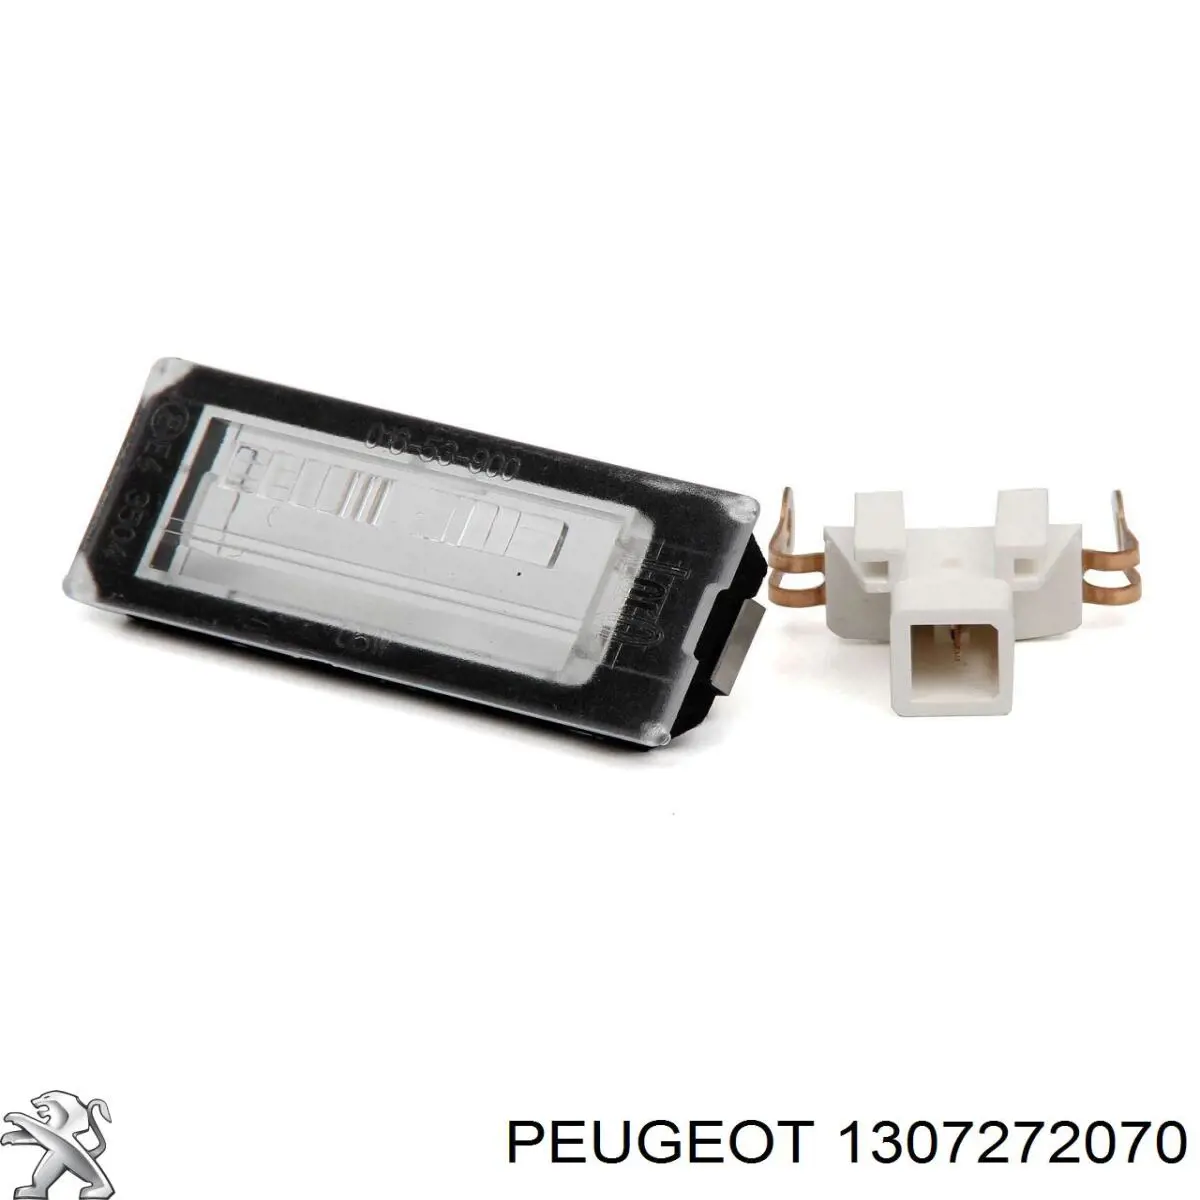 1307272070 Peugeot/Citroen lanterna da luz de fundo de matrícula traseira